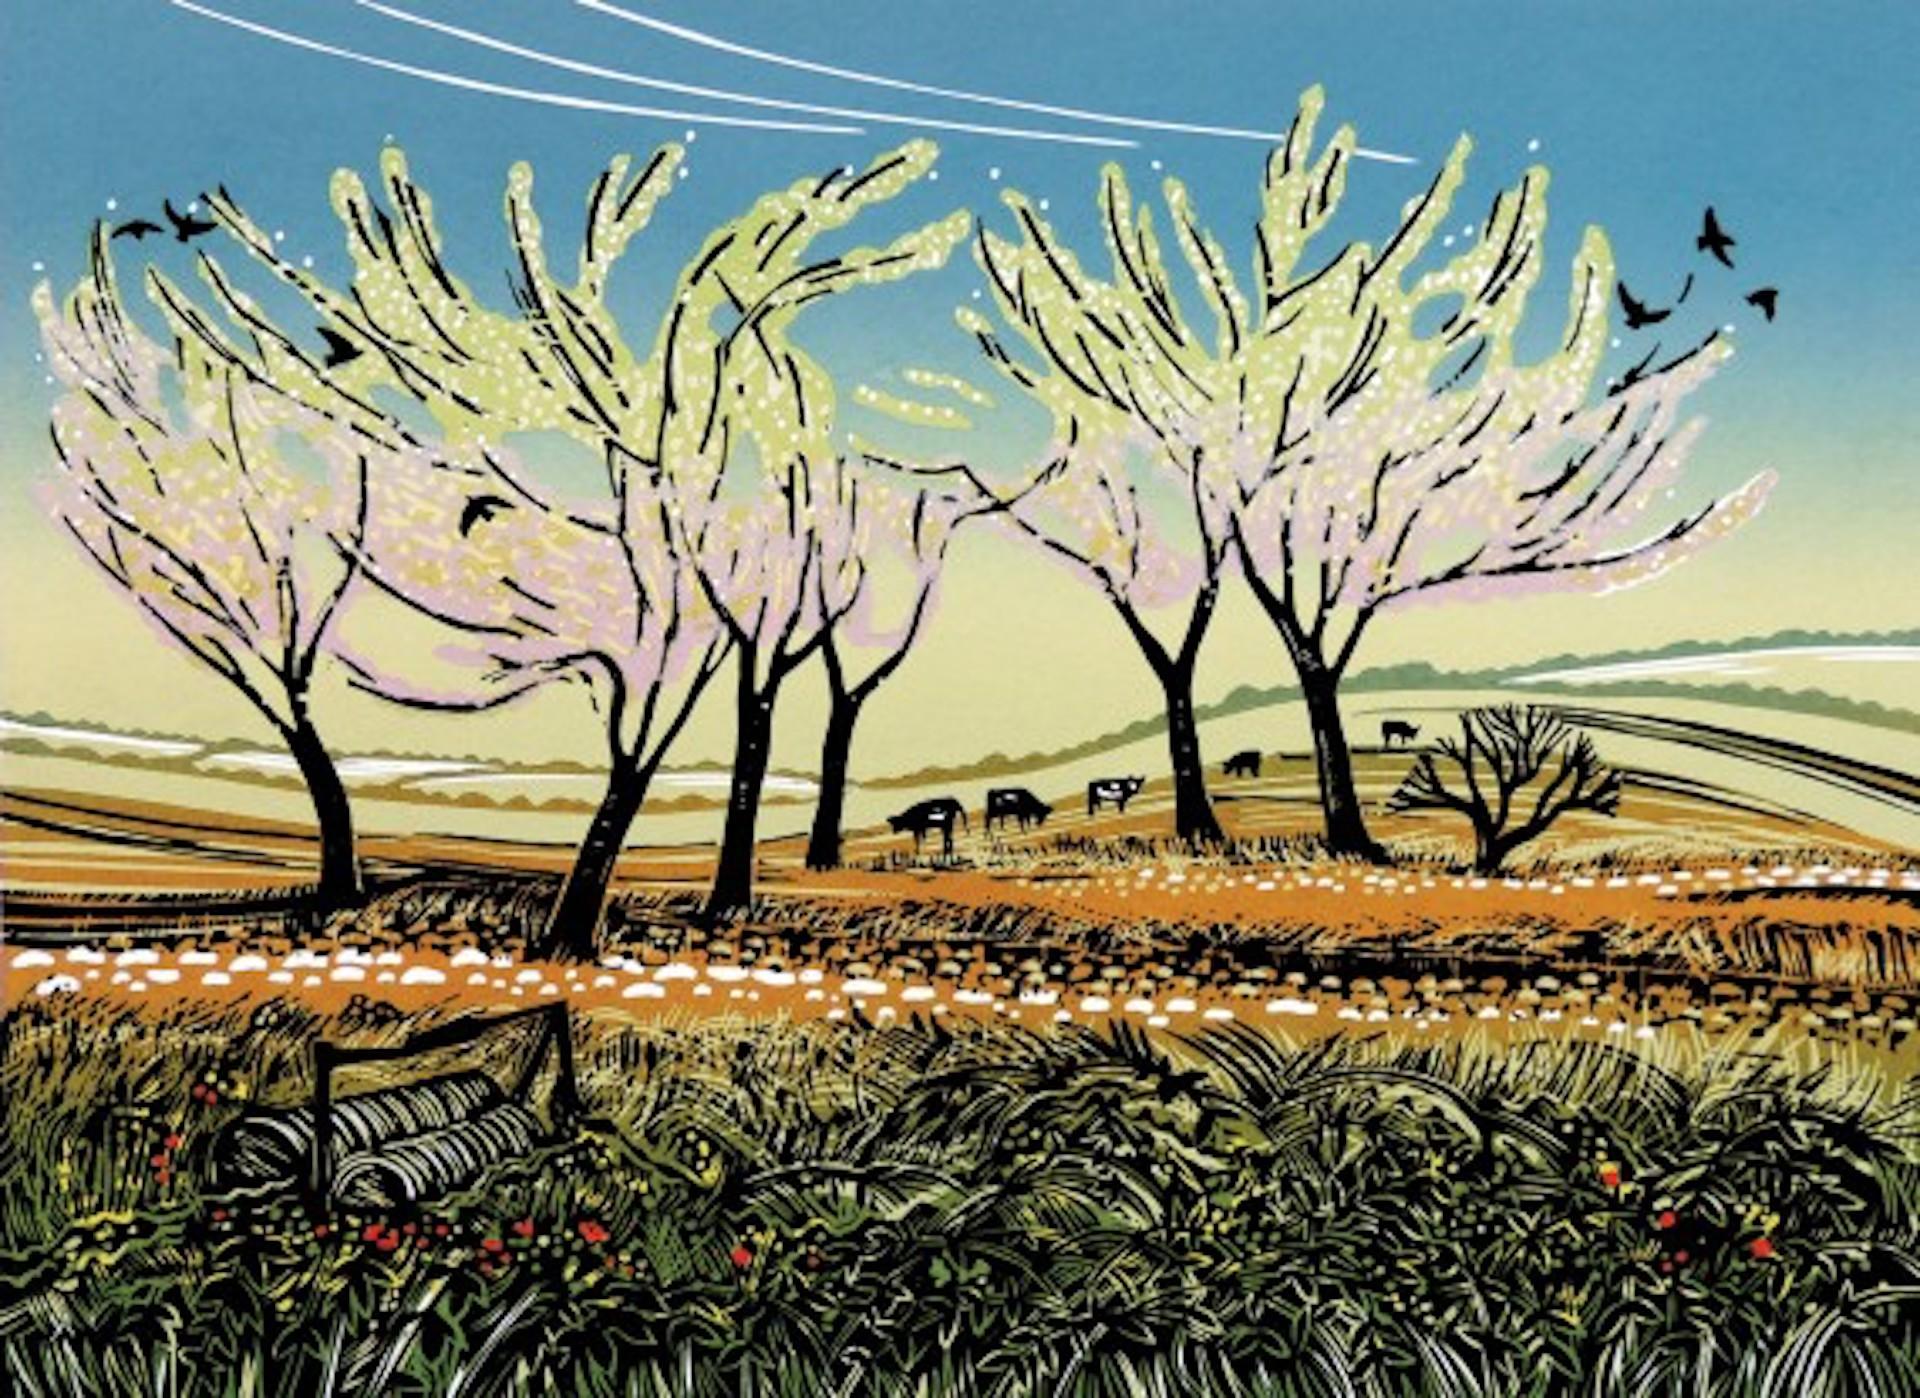 Rob Barnes Animal Print – Blossom in the Wind, Landschaftsdruck in limitierter Auflage, Landschaftsdruck im Landhausstil, Linolschnitt 